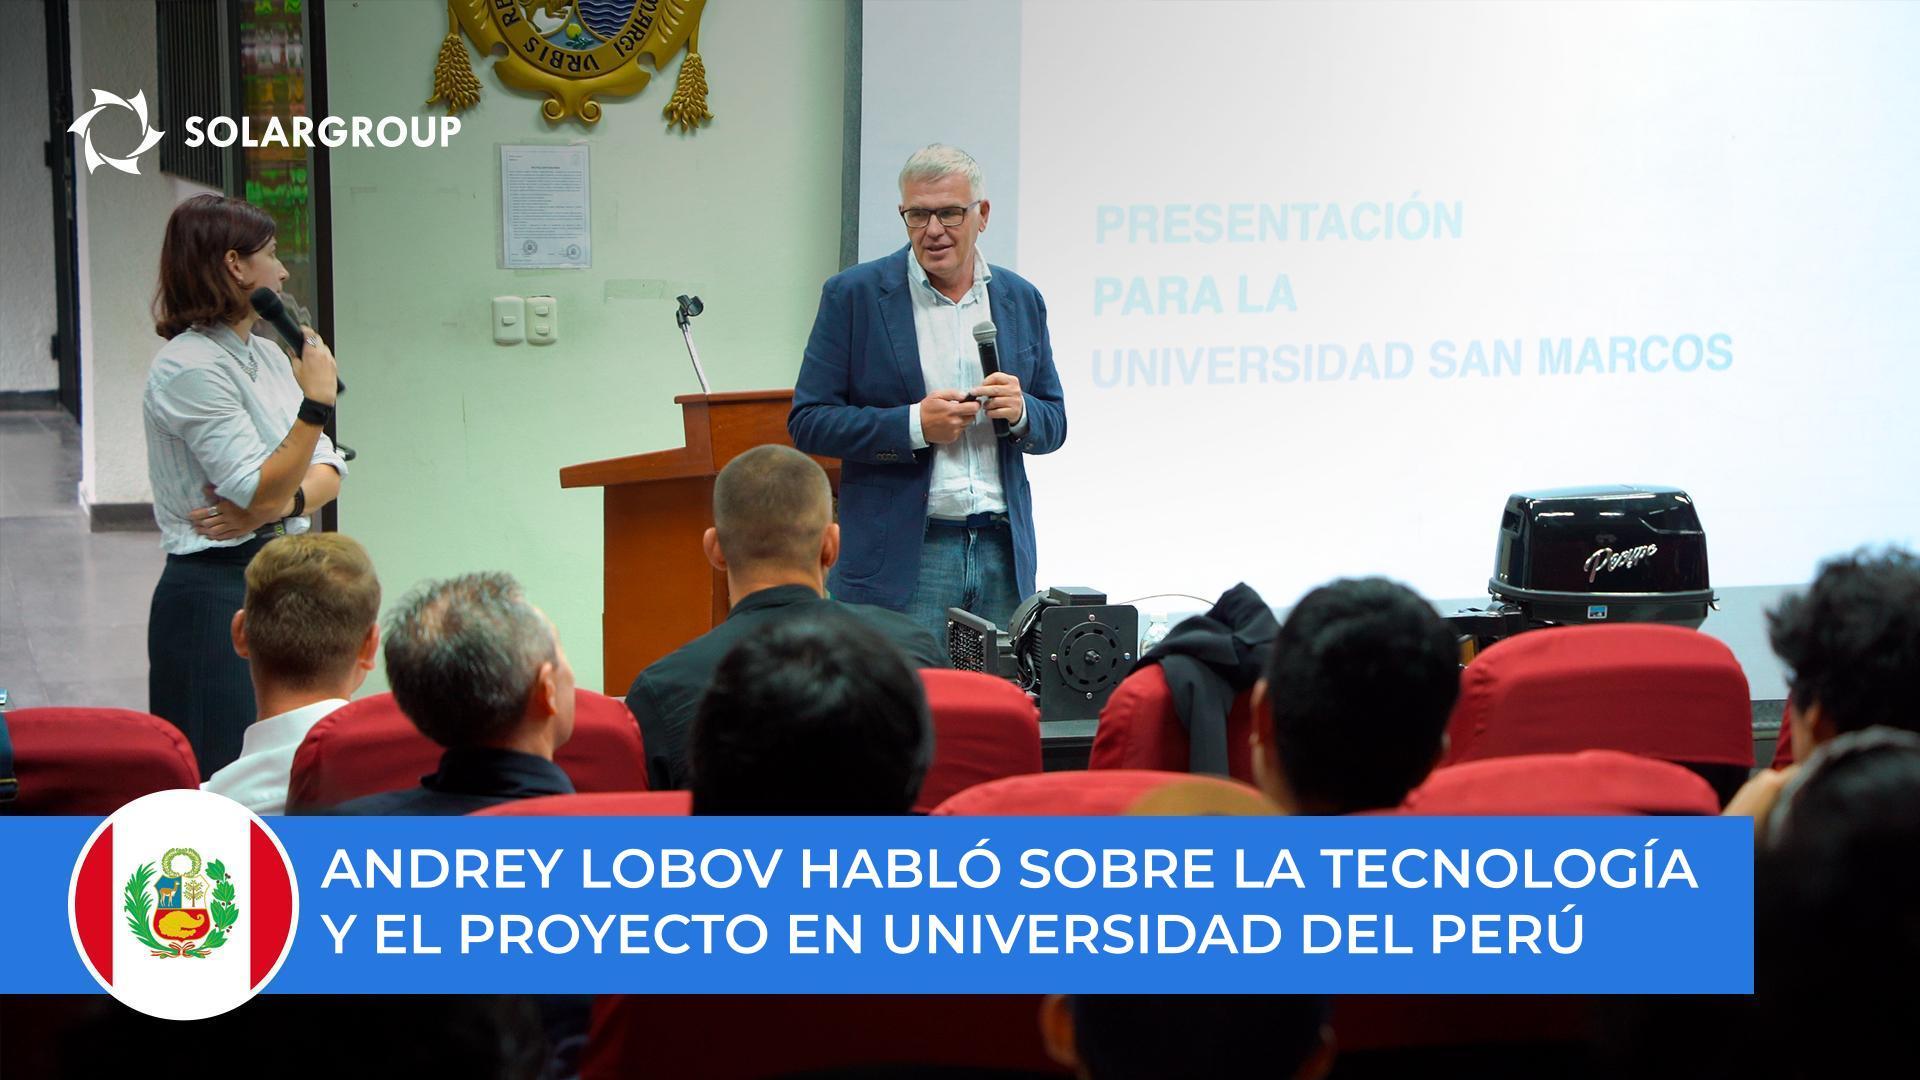 Andrey Lobov habló sobre la tecnología y el proyecto a estudiantes y profesores de la universidad de San Marcos